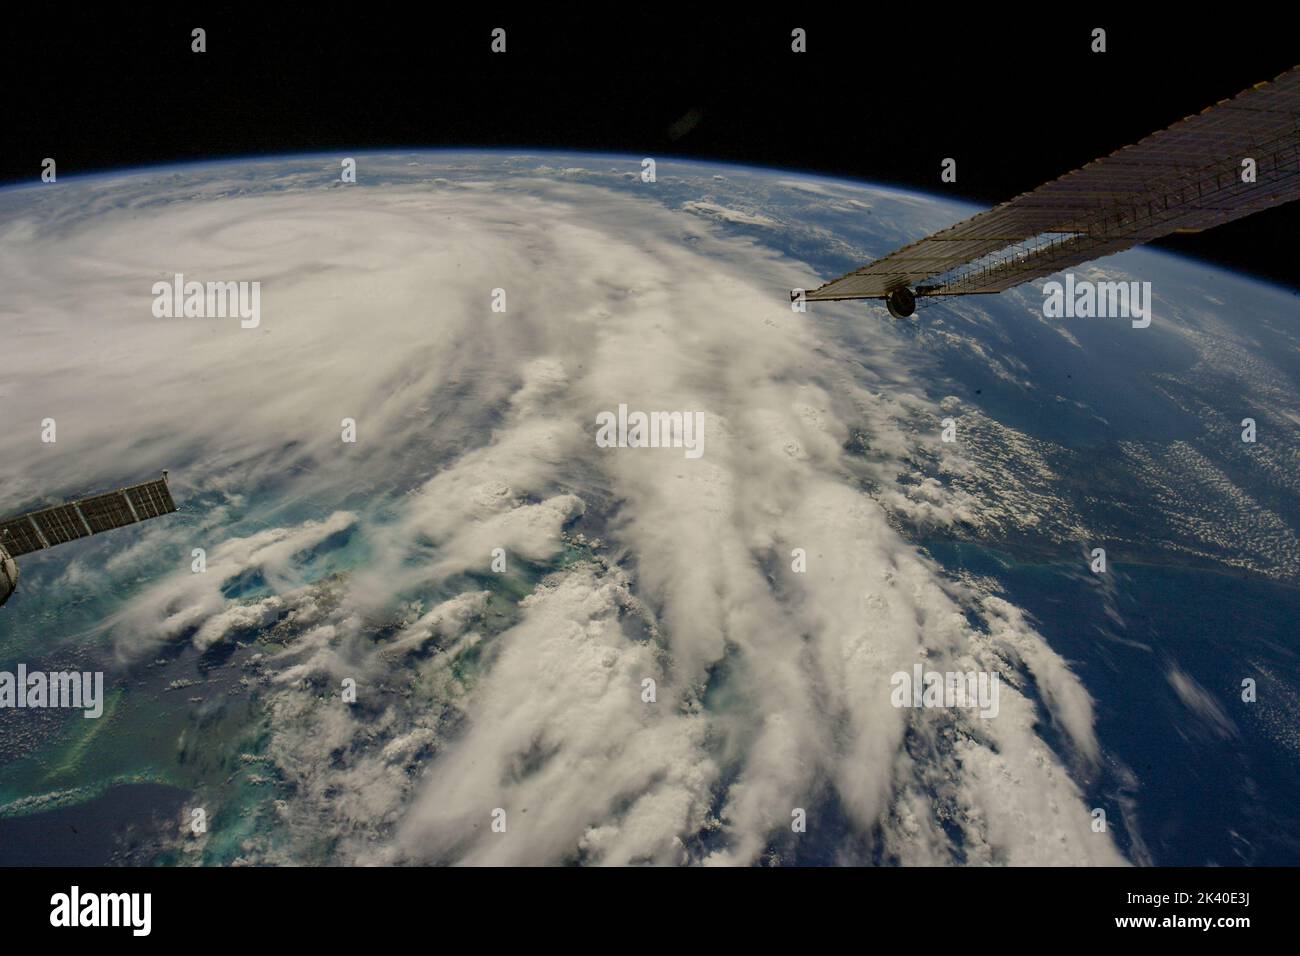 KARIBISCHES MEER - 26. September 2020 - die Astronauten auf der Internationalen Raumstation fangen dieses dramatische Bild des von dem Weltraumbahnhof Ian in Richtung CO aufragenden Atems ein Stockfoto